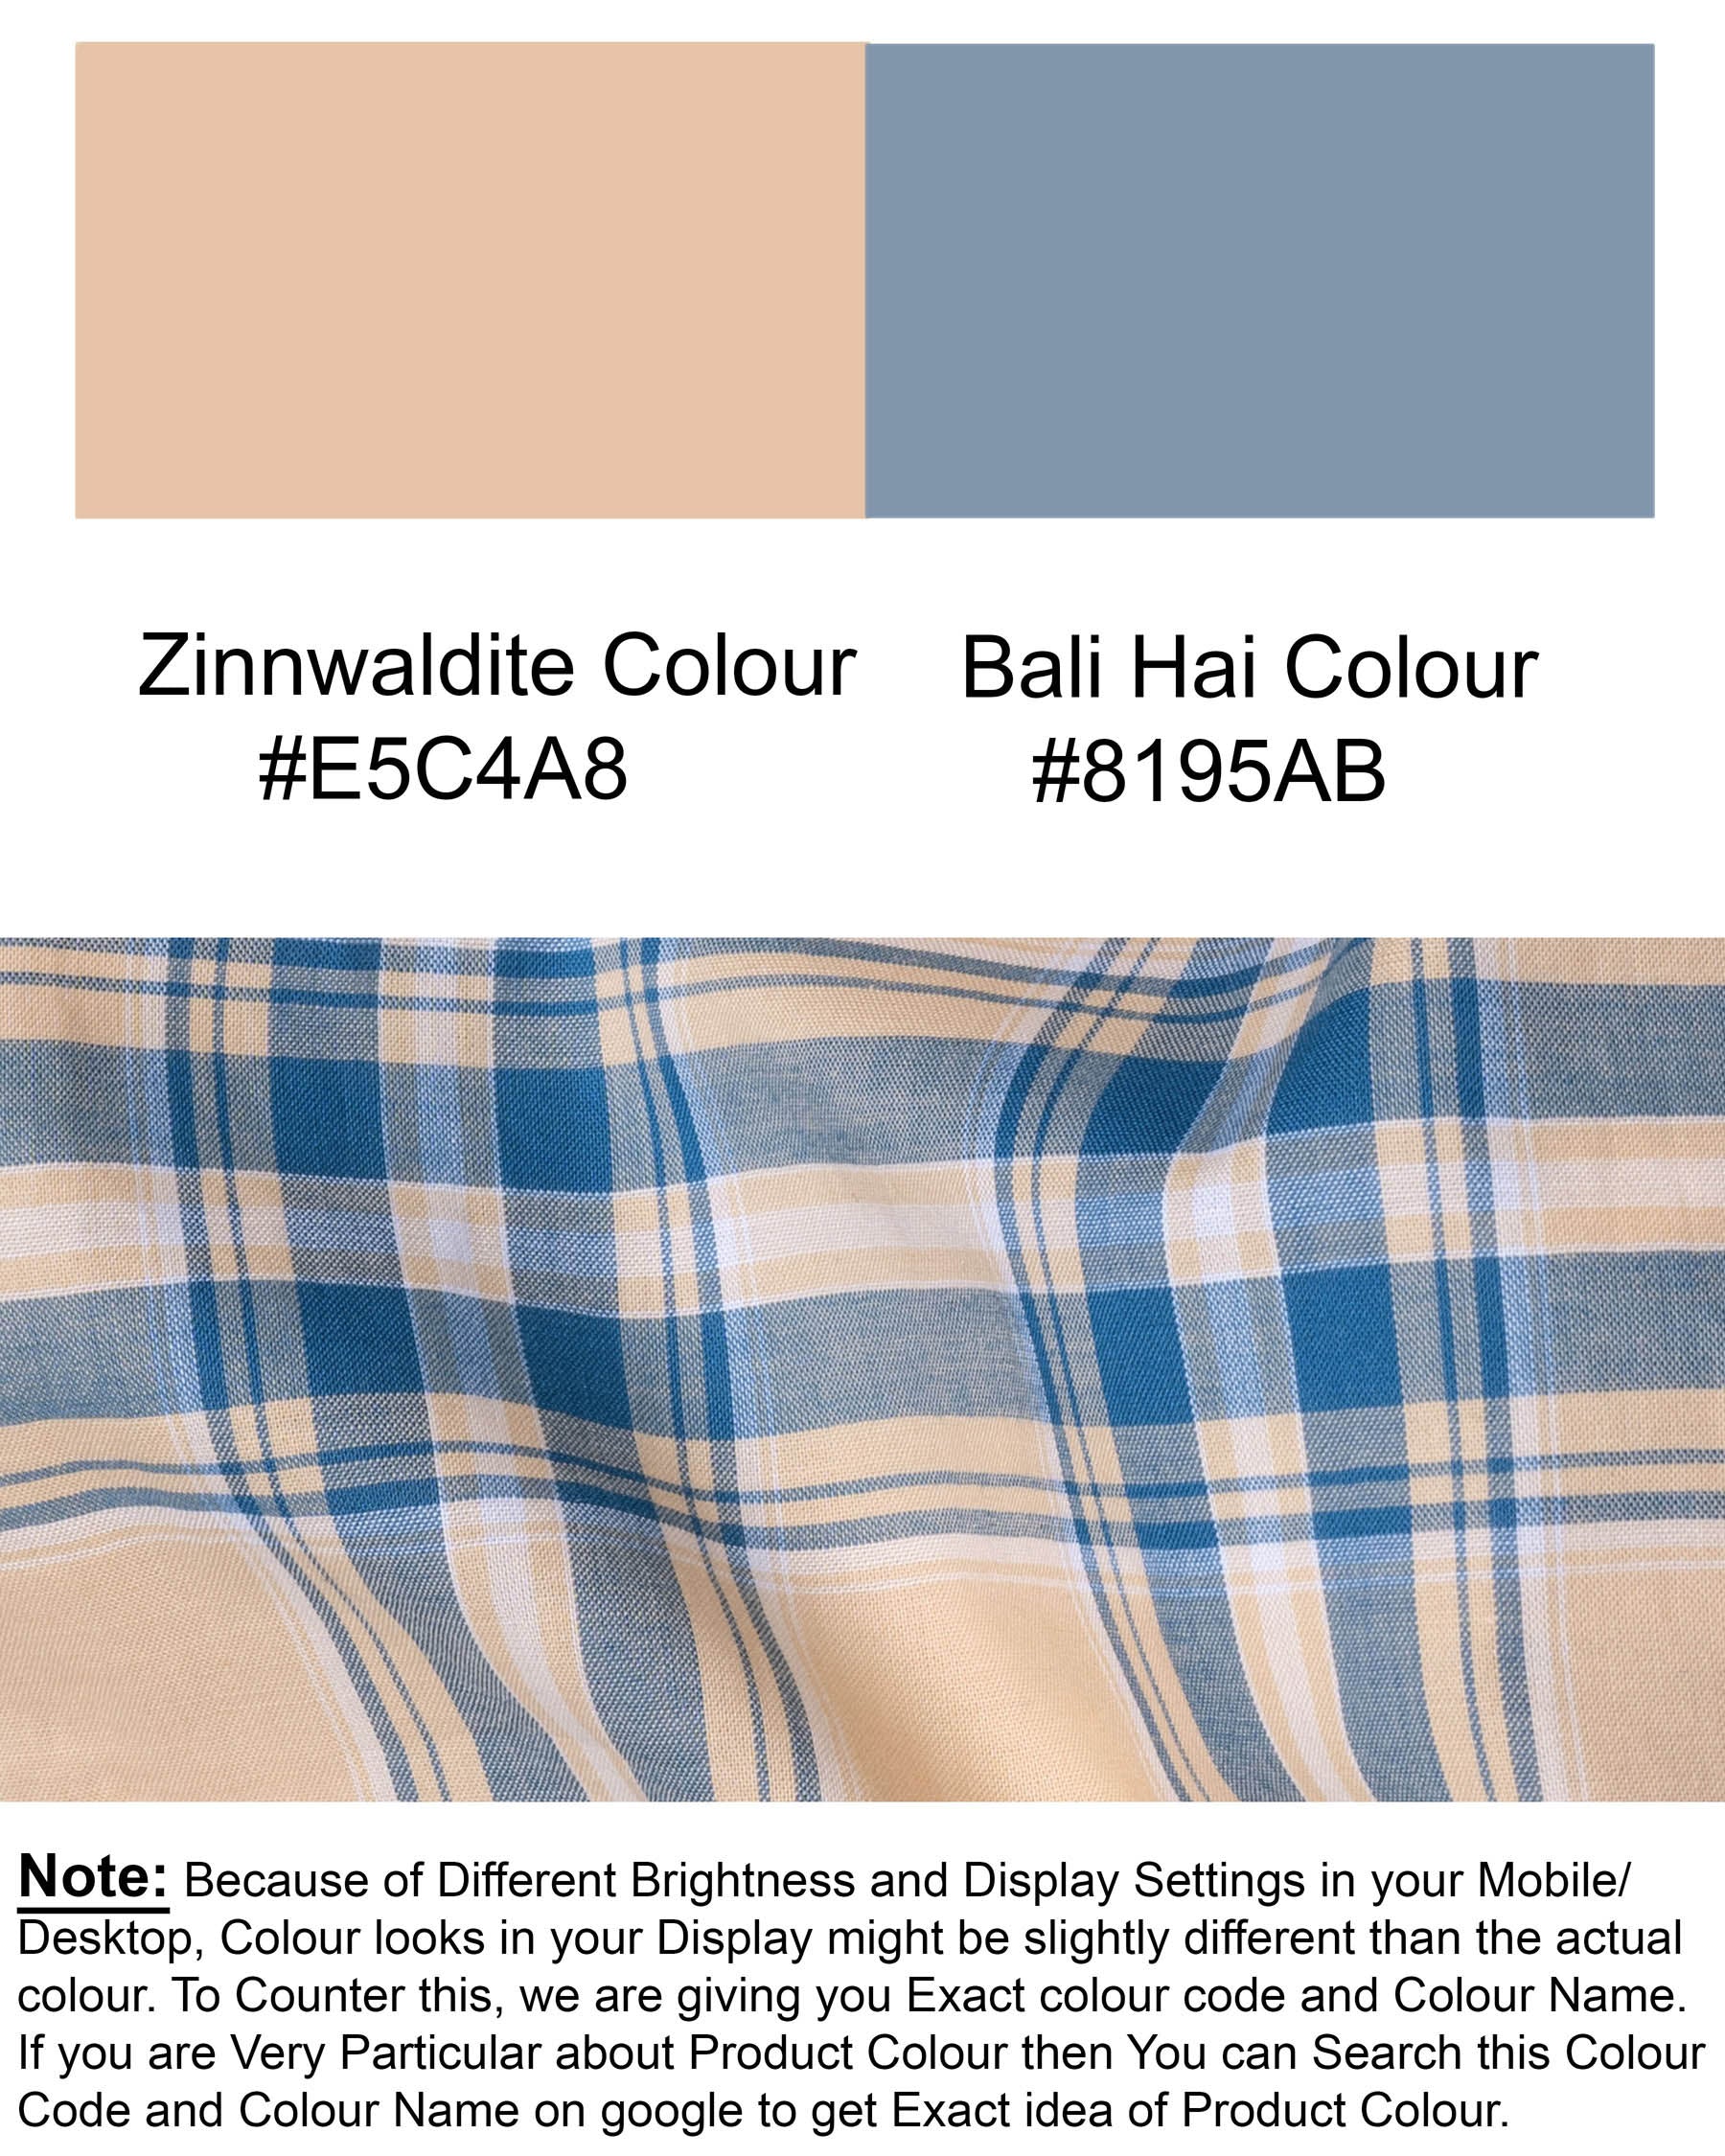 Zinnwaldite Brown and Bali Hai Blue Plaid Premium Cotton Shirt 5765-M-38, 5765-M-H-38, 5765-M-39, 5765-M-H-39, 5765-M-40, 5765-M-H-40, 5765-M-42, 5765-M-H-42, 5765-M-44, 5765-M-H-44, 5765-M-46, 5765-M-H-46, 5765-M-48, 5765-M-H-48, 5765-M-50, 5765-M-H-50, 5765-M-52, 5765-M-H-52